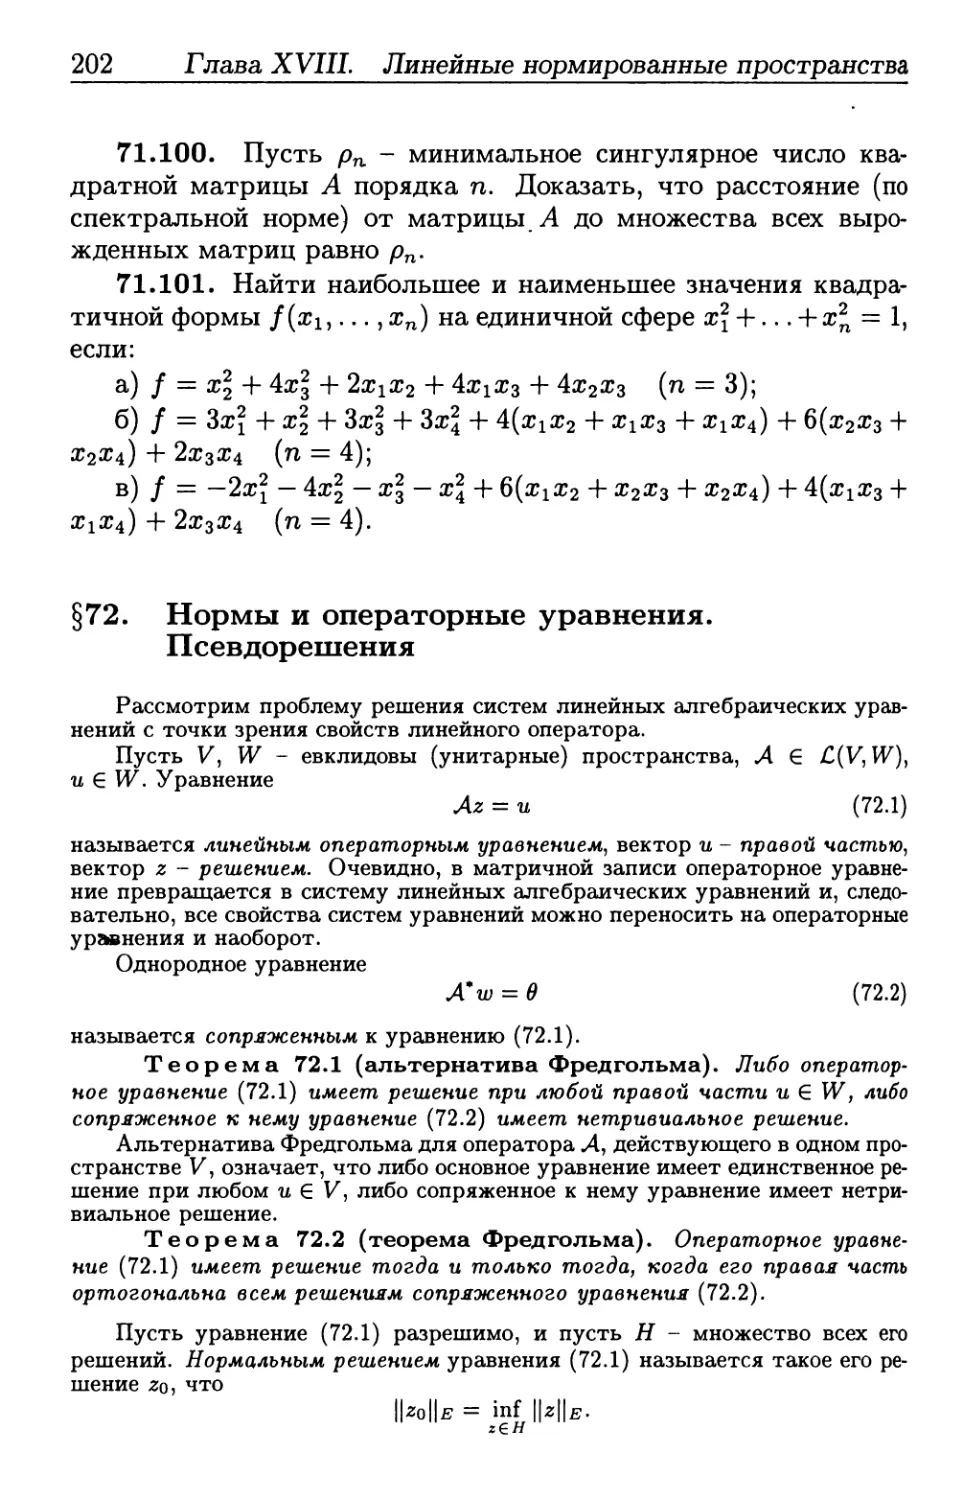 § 72. Нормы и операторные уравнения. Псевдорешения